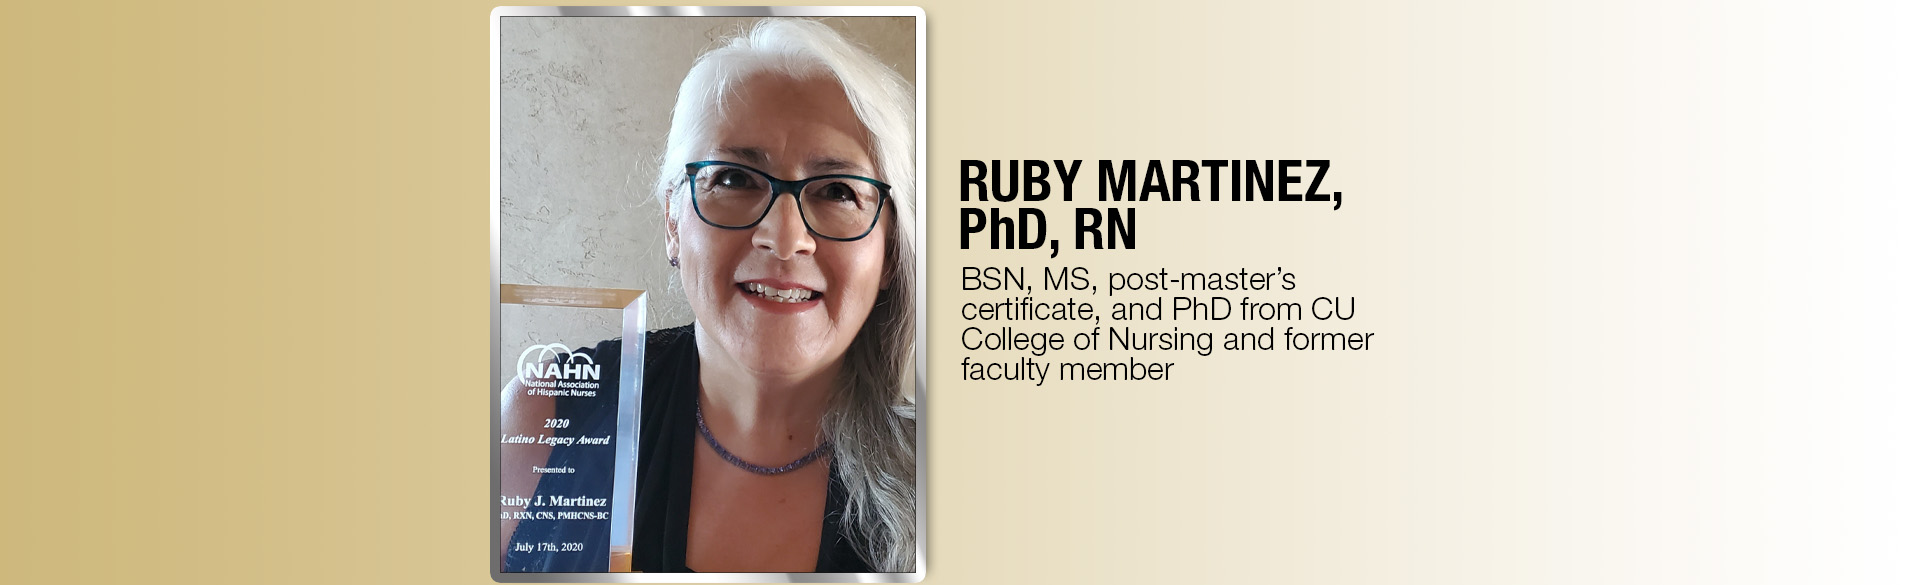 CU Nursing alumna Ruby Martinez, PhD, RN